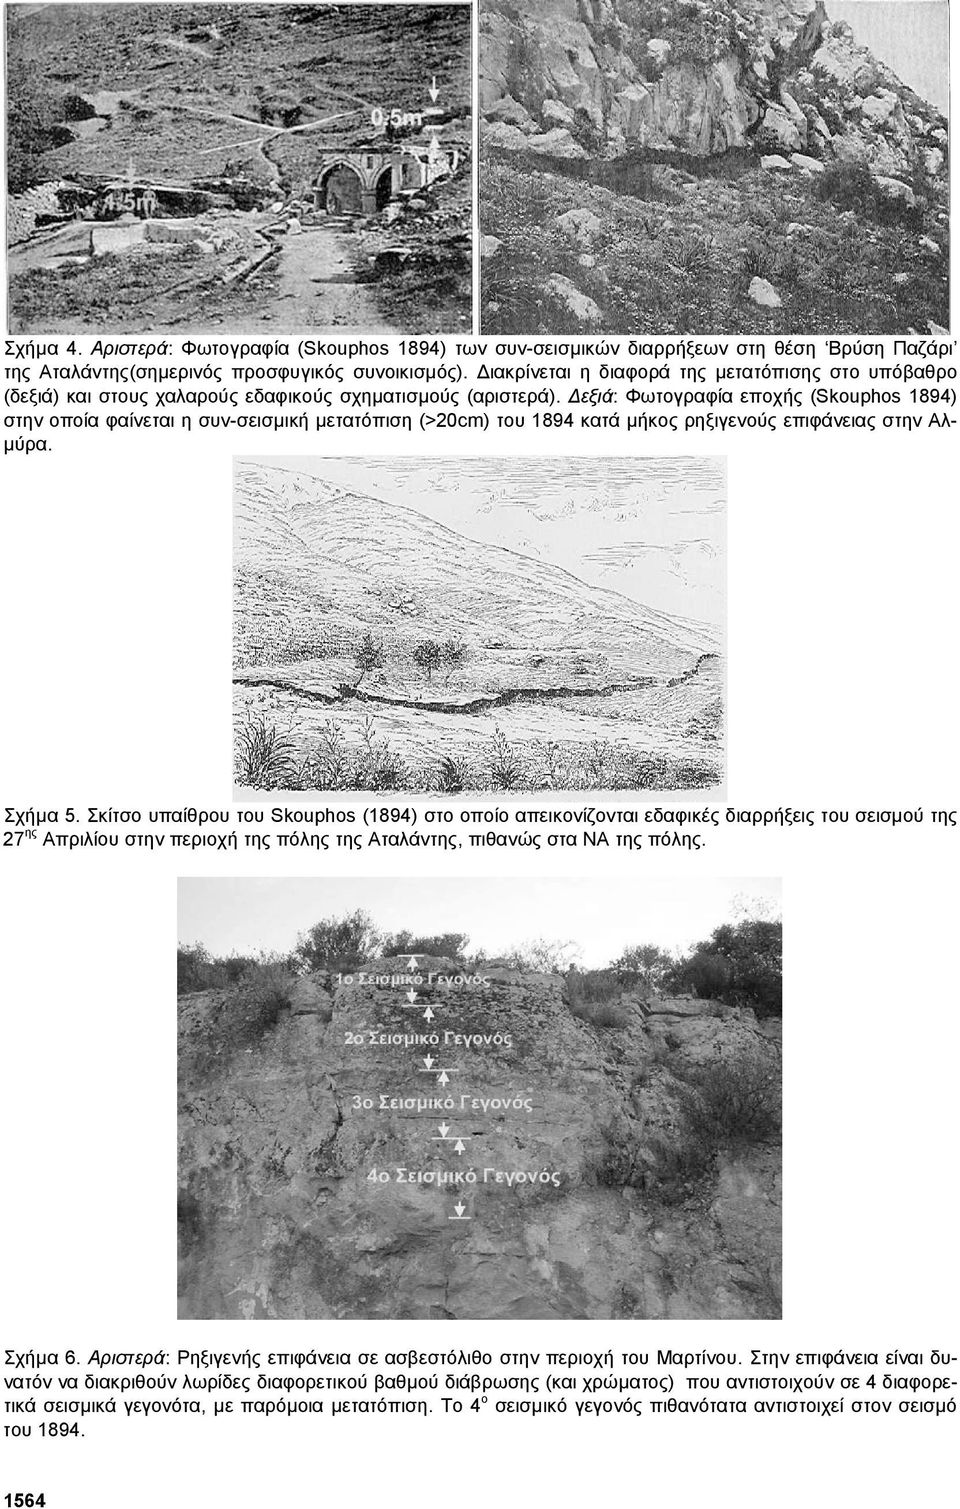 εξιά: Φωτογραφία εποχής (Skouphos 1894) στην οποία φαίνεται η συν-σεισµική µετατόπιση (>20cm) του 1894 κατά µήκος ρηξιγενούς επιφάνειας στην Αλ- µύρα. Σχήµα 5.